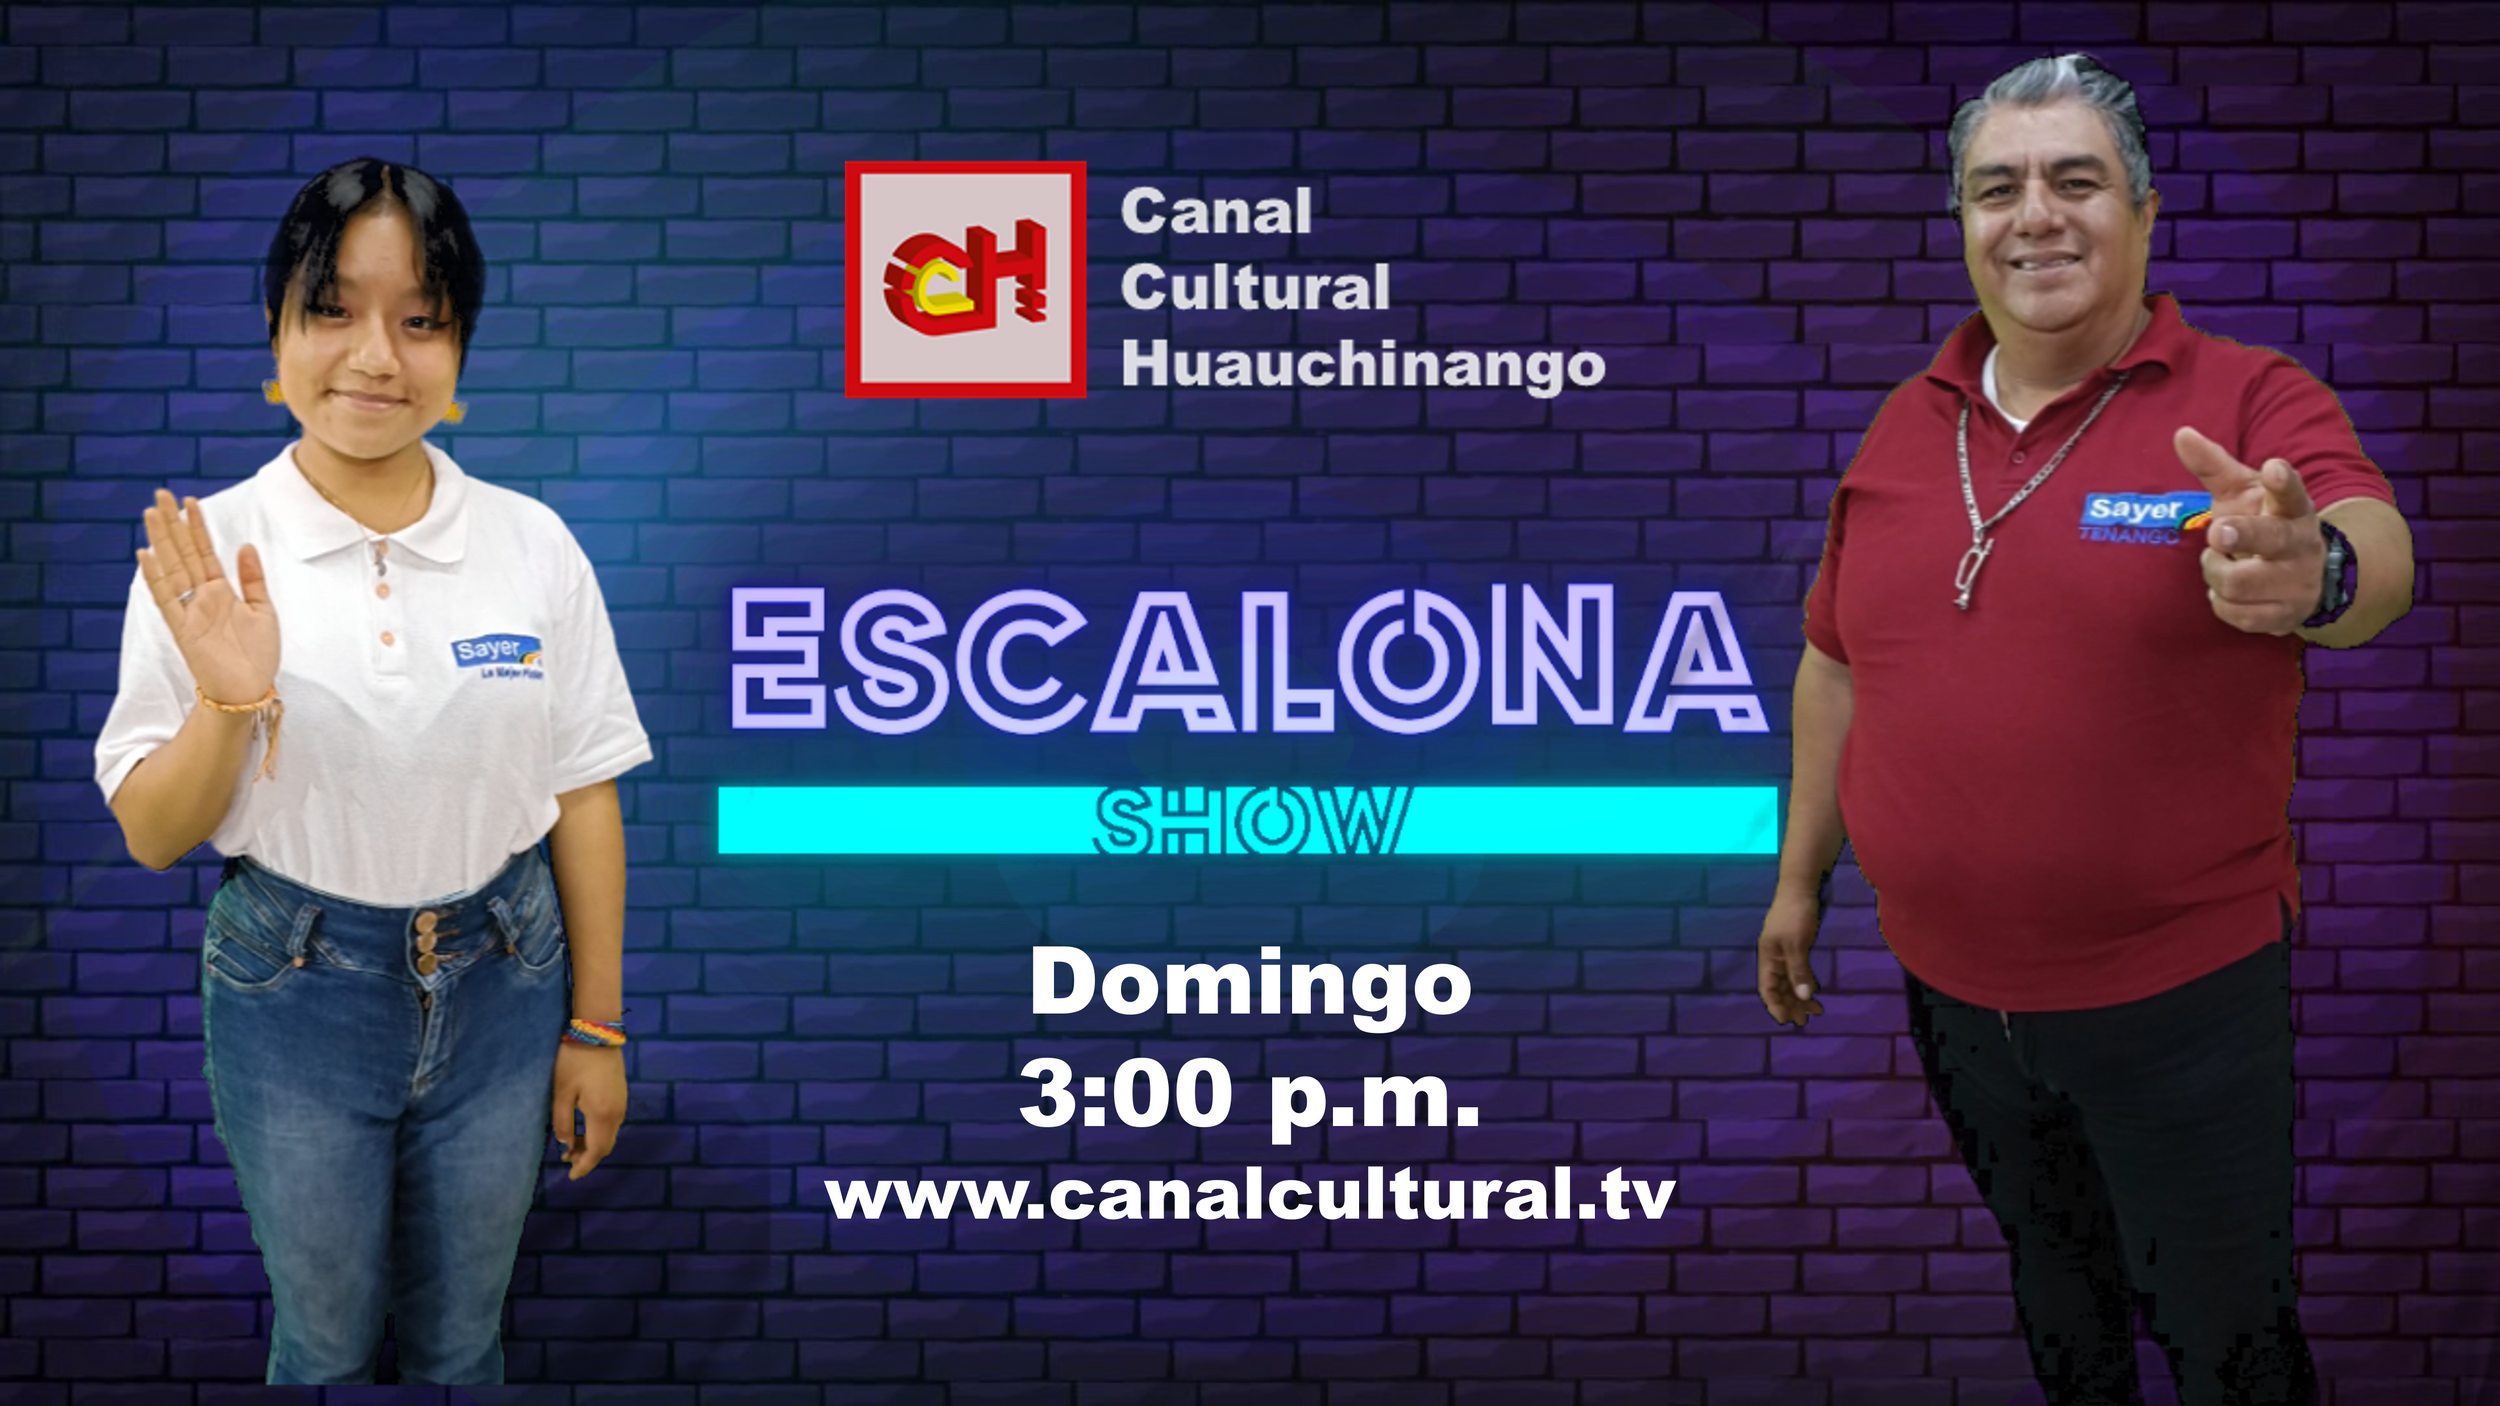 Escalona Show | Canal Cultural TV